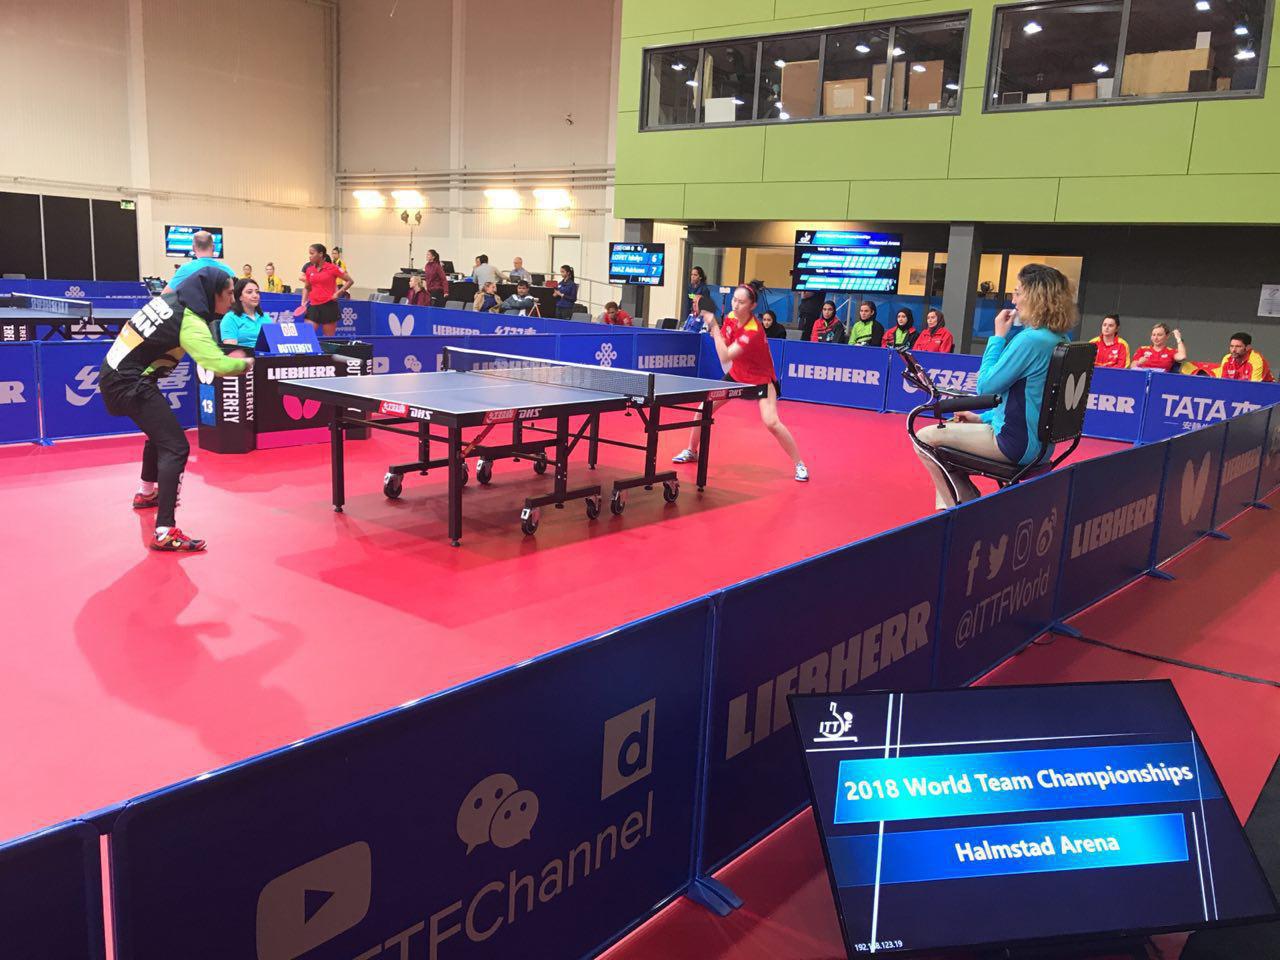 تنیس روی میز قهرمانی جهان ؛ پایان کار دختران پینگ پنگ باز ایران با رتبه 41